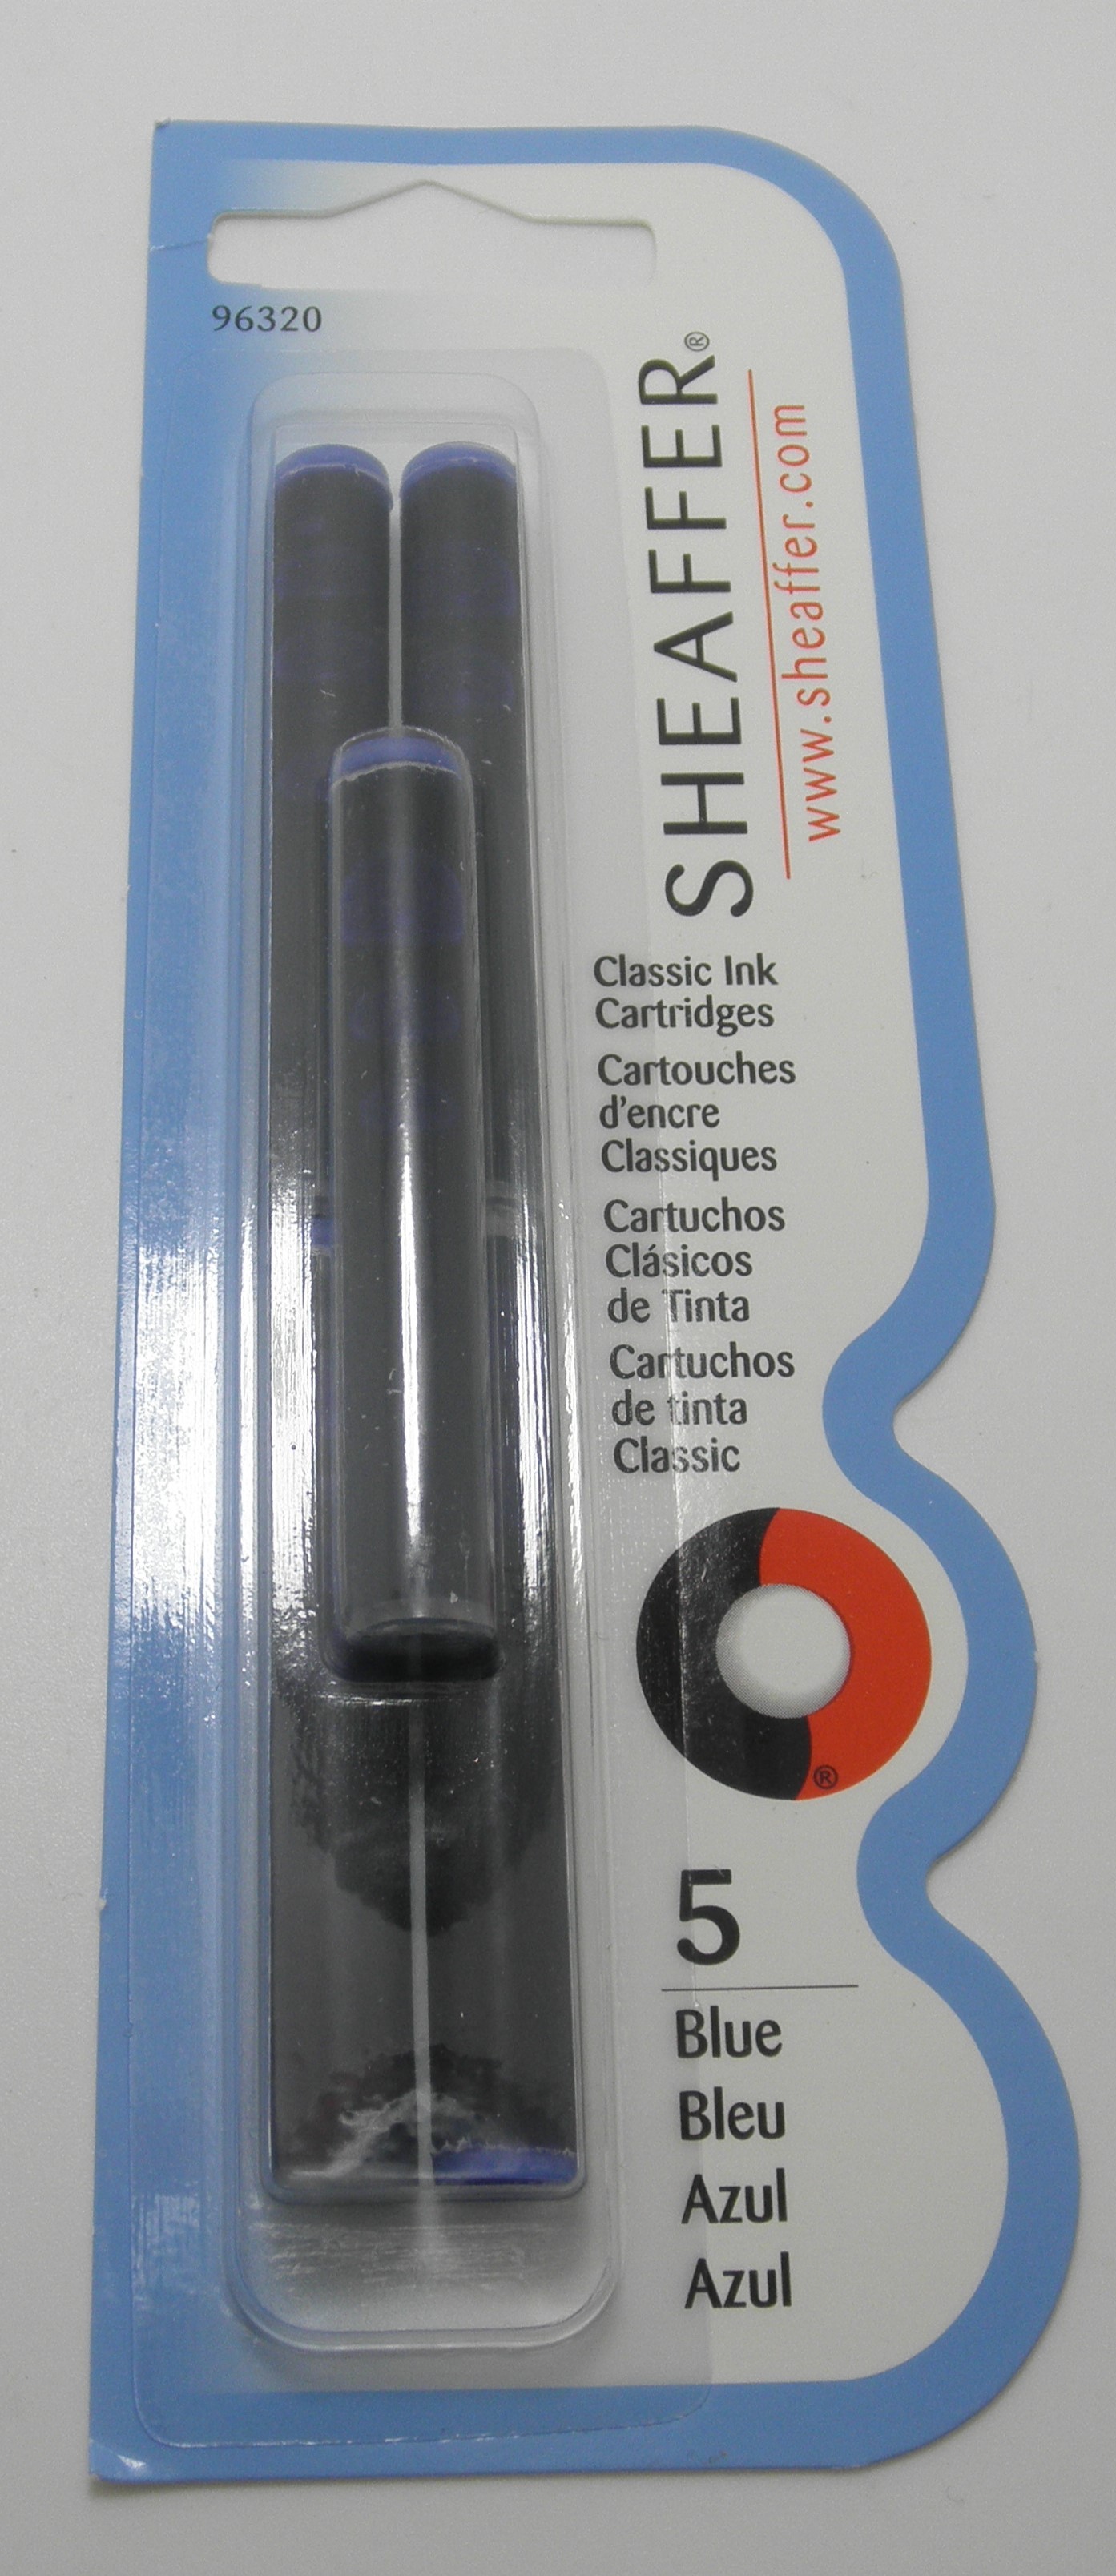 Sheaffer Fountain Pen Ink Cartridges Blue